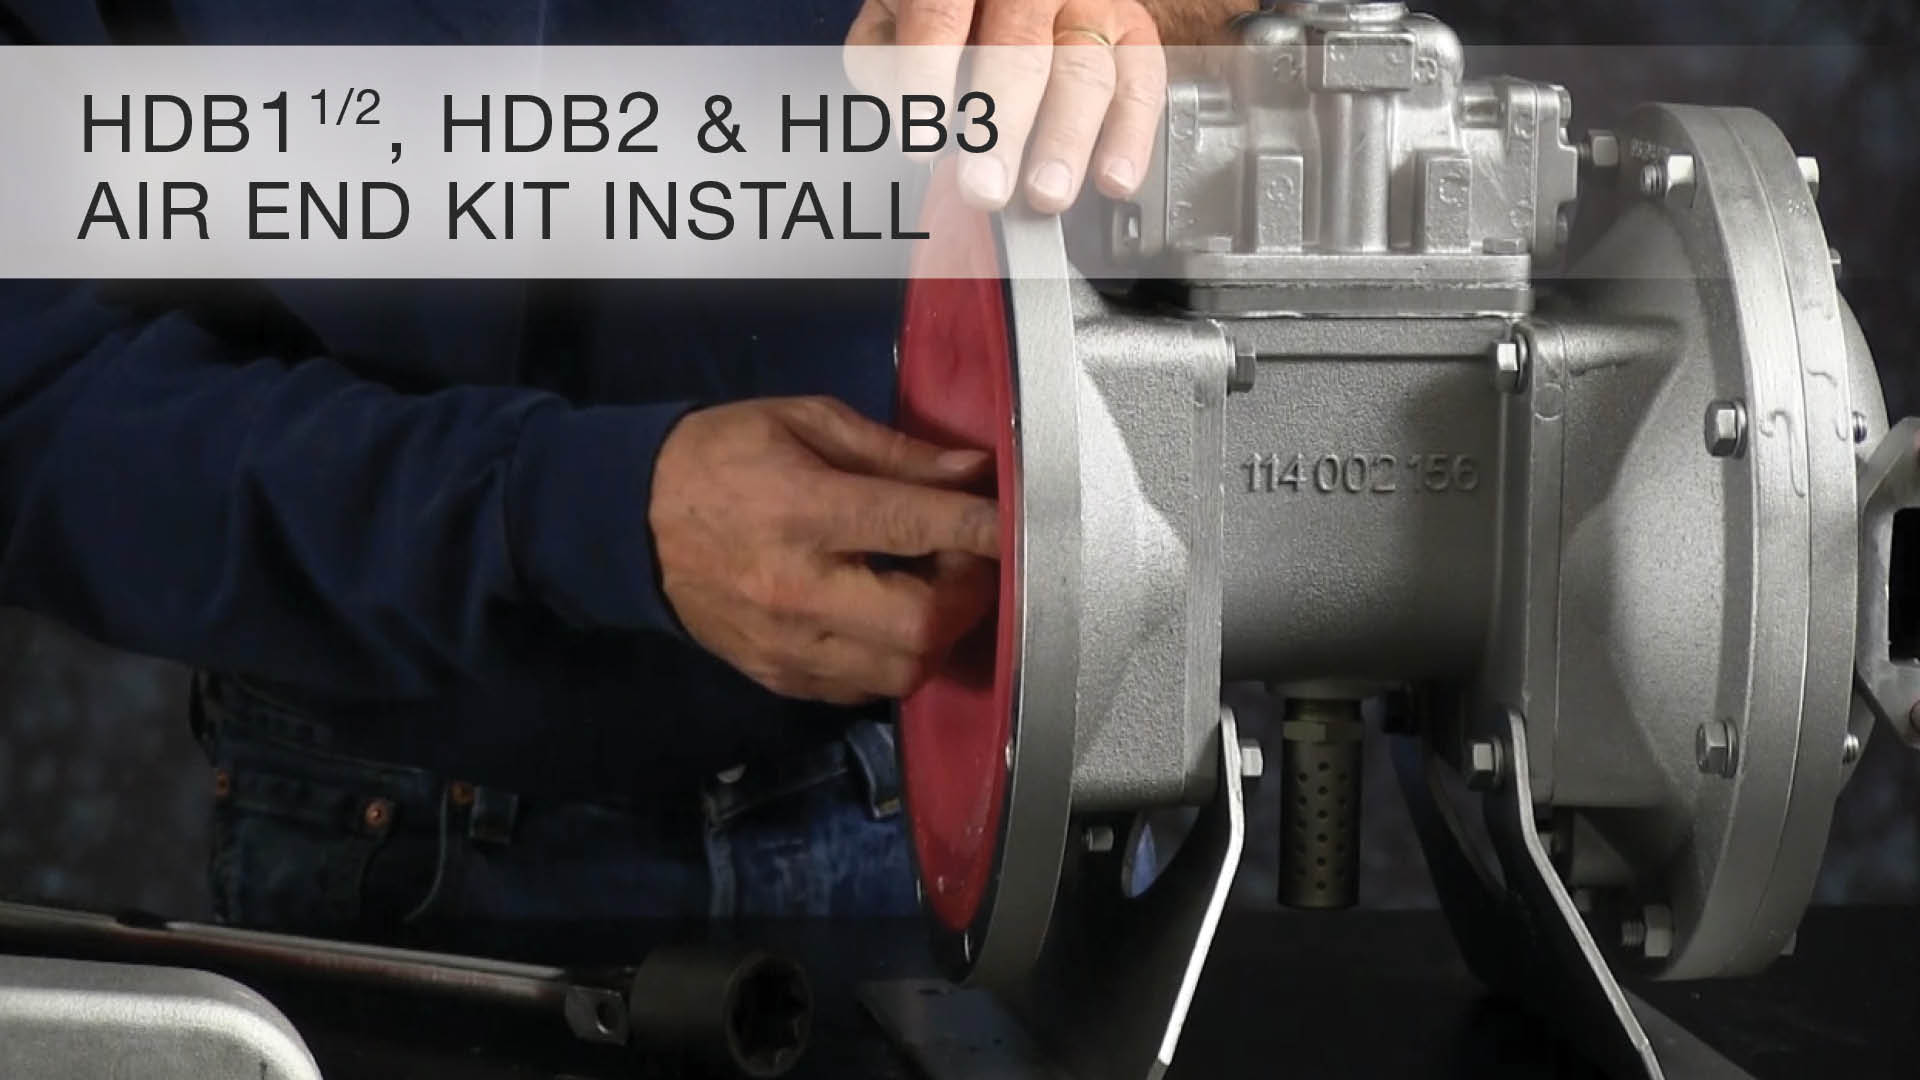 HDB1 1/2, HDB2, HDB3, Air End Kit Install